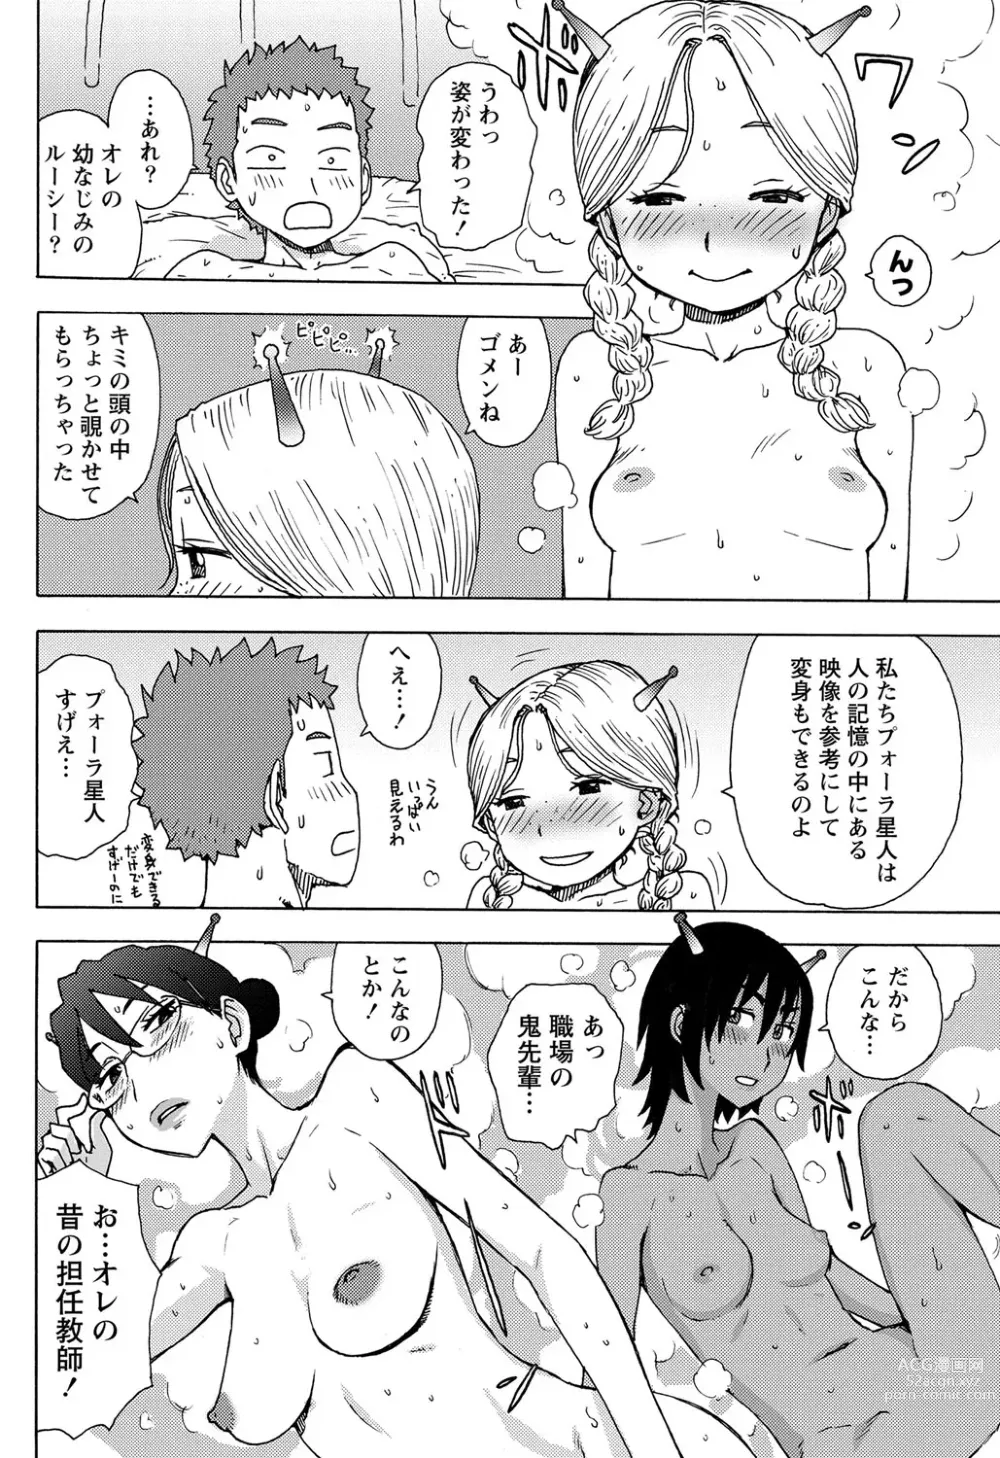 Page 4 of manga Saraware